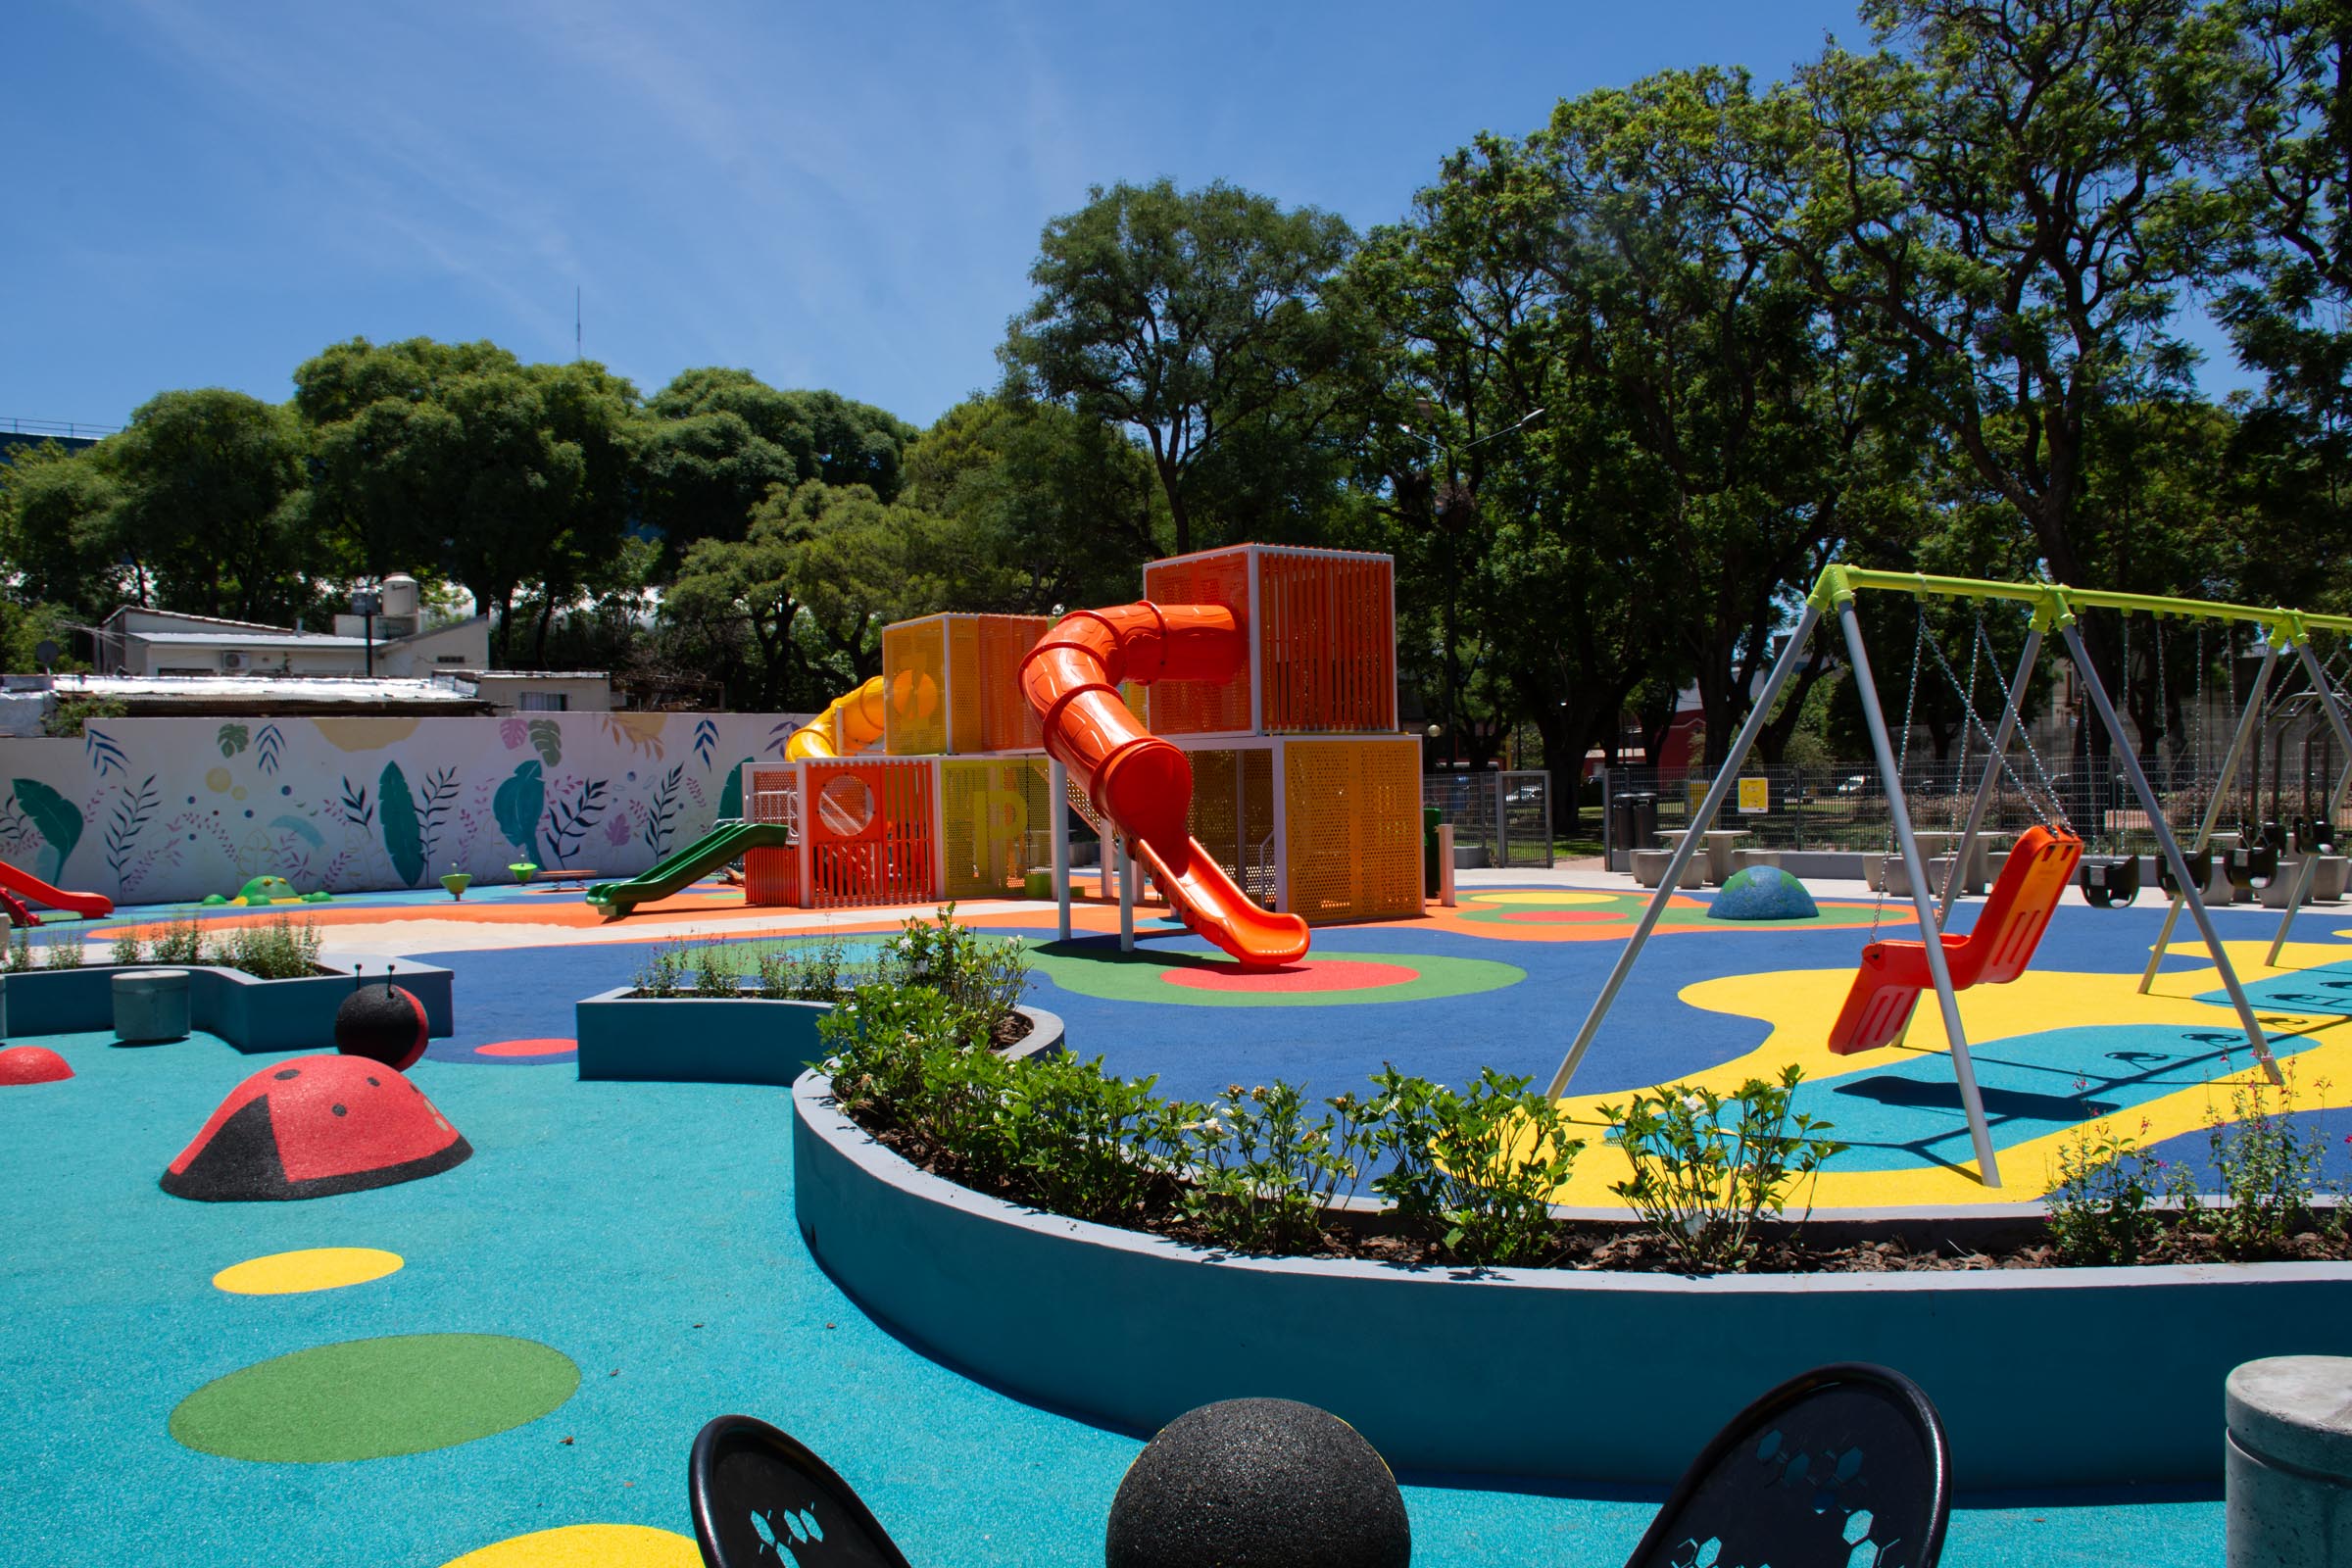 La Ciudad renovó el espacio de juegos de la Plaza Antonio Malaver